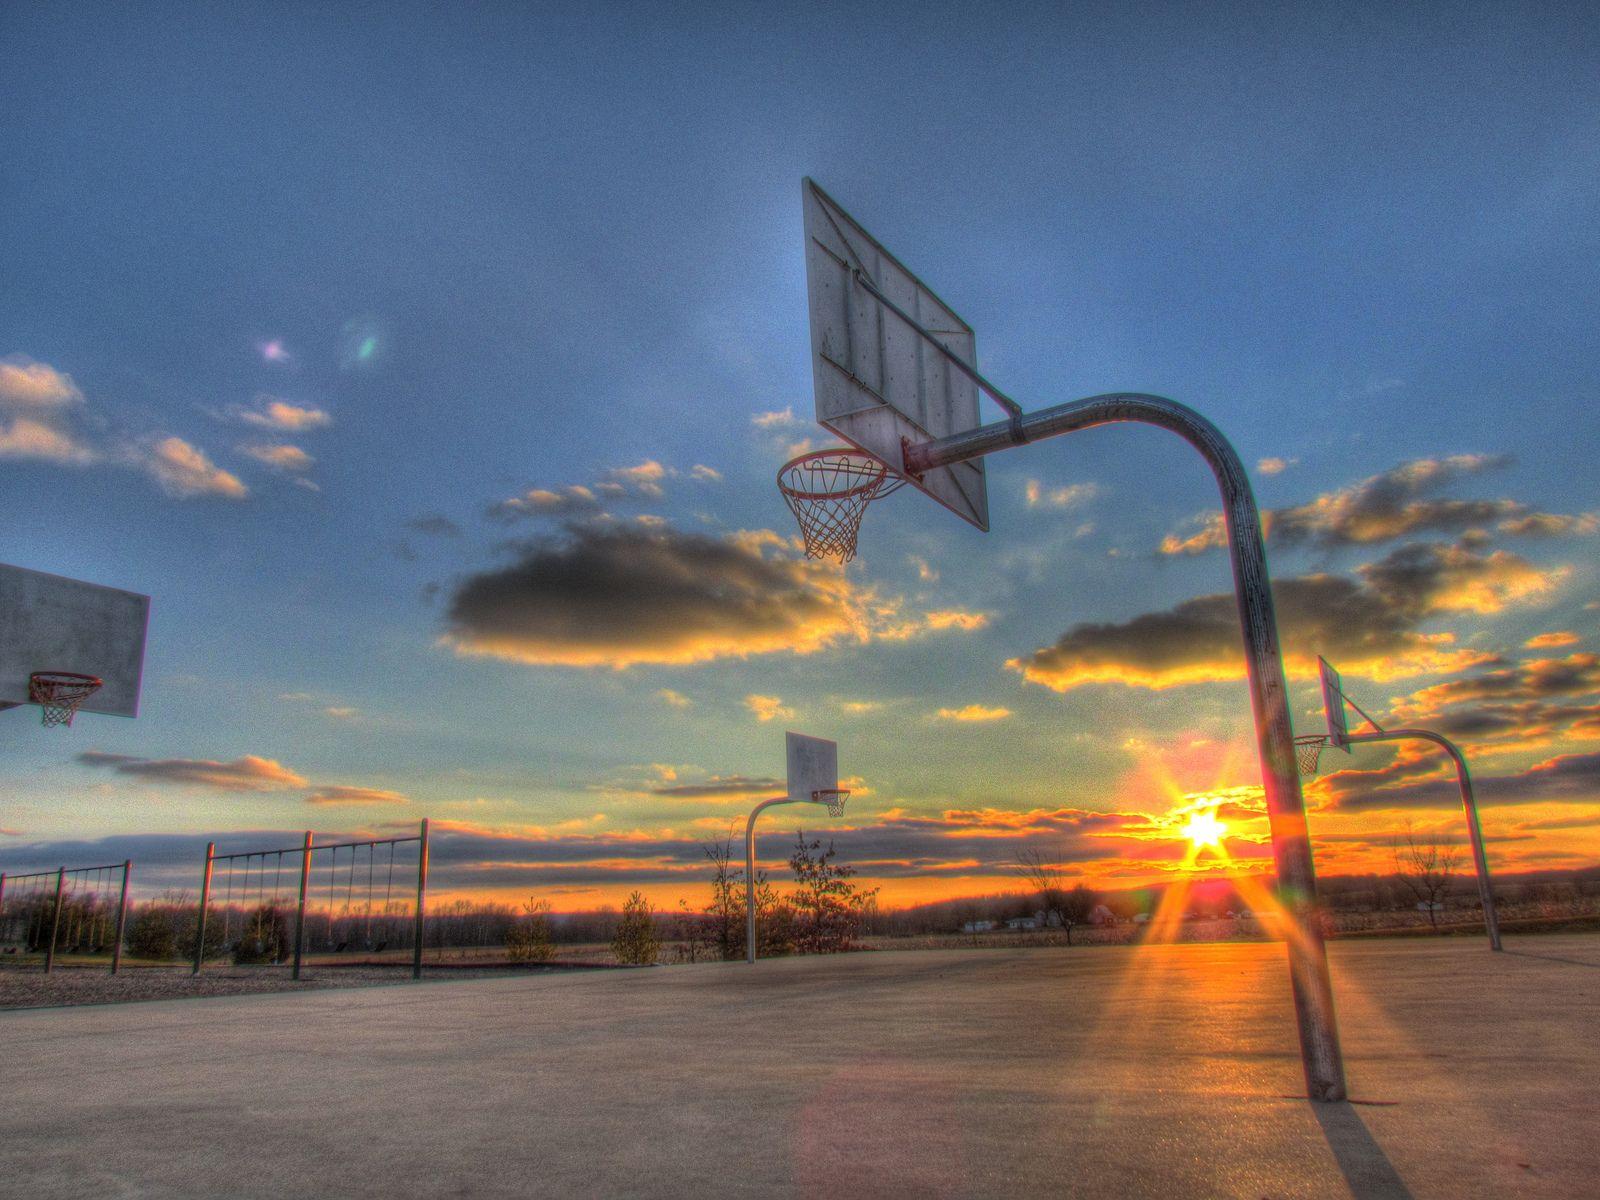 Hd Basketball Court Wallpaper For iPhone.com. Pool basketball, Outdoor basketball court, Basketball court backyard